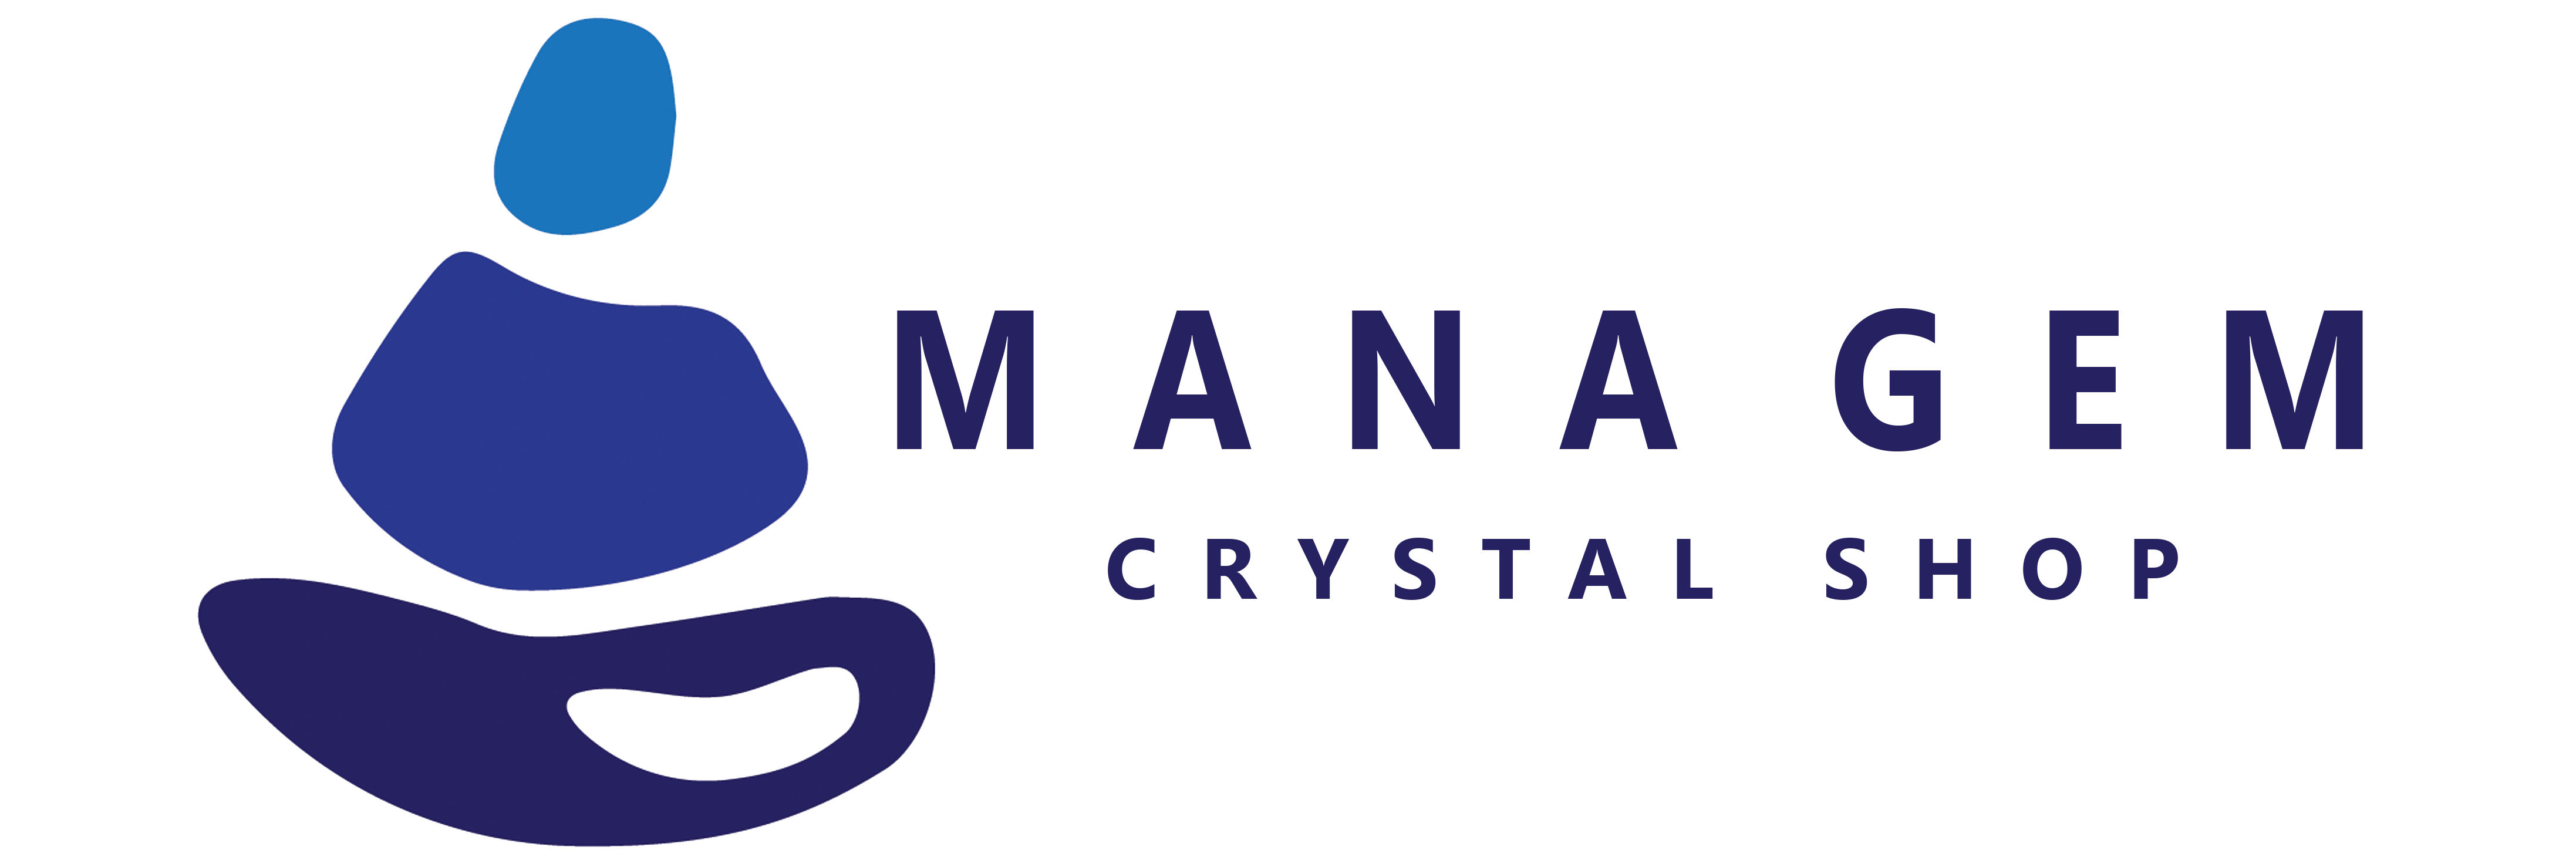 مانا جم | فروشگاه اینترنتی جواهرات سنگی و ابزار های انرژی